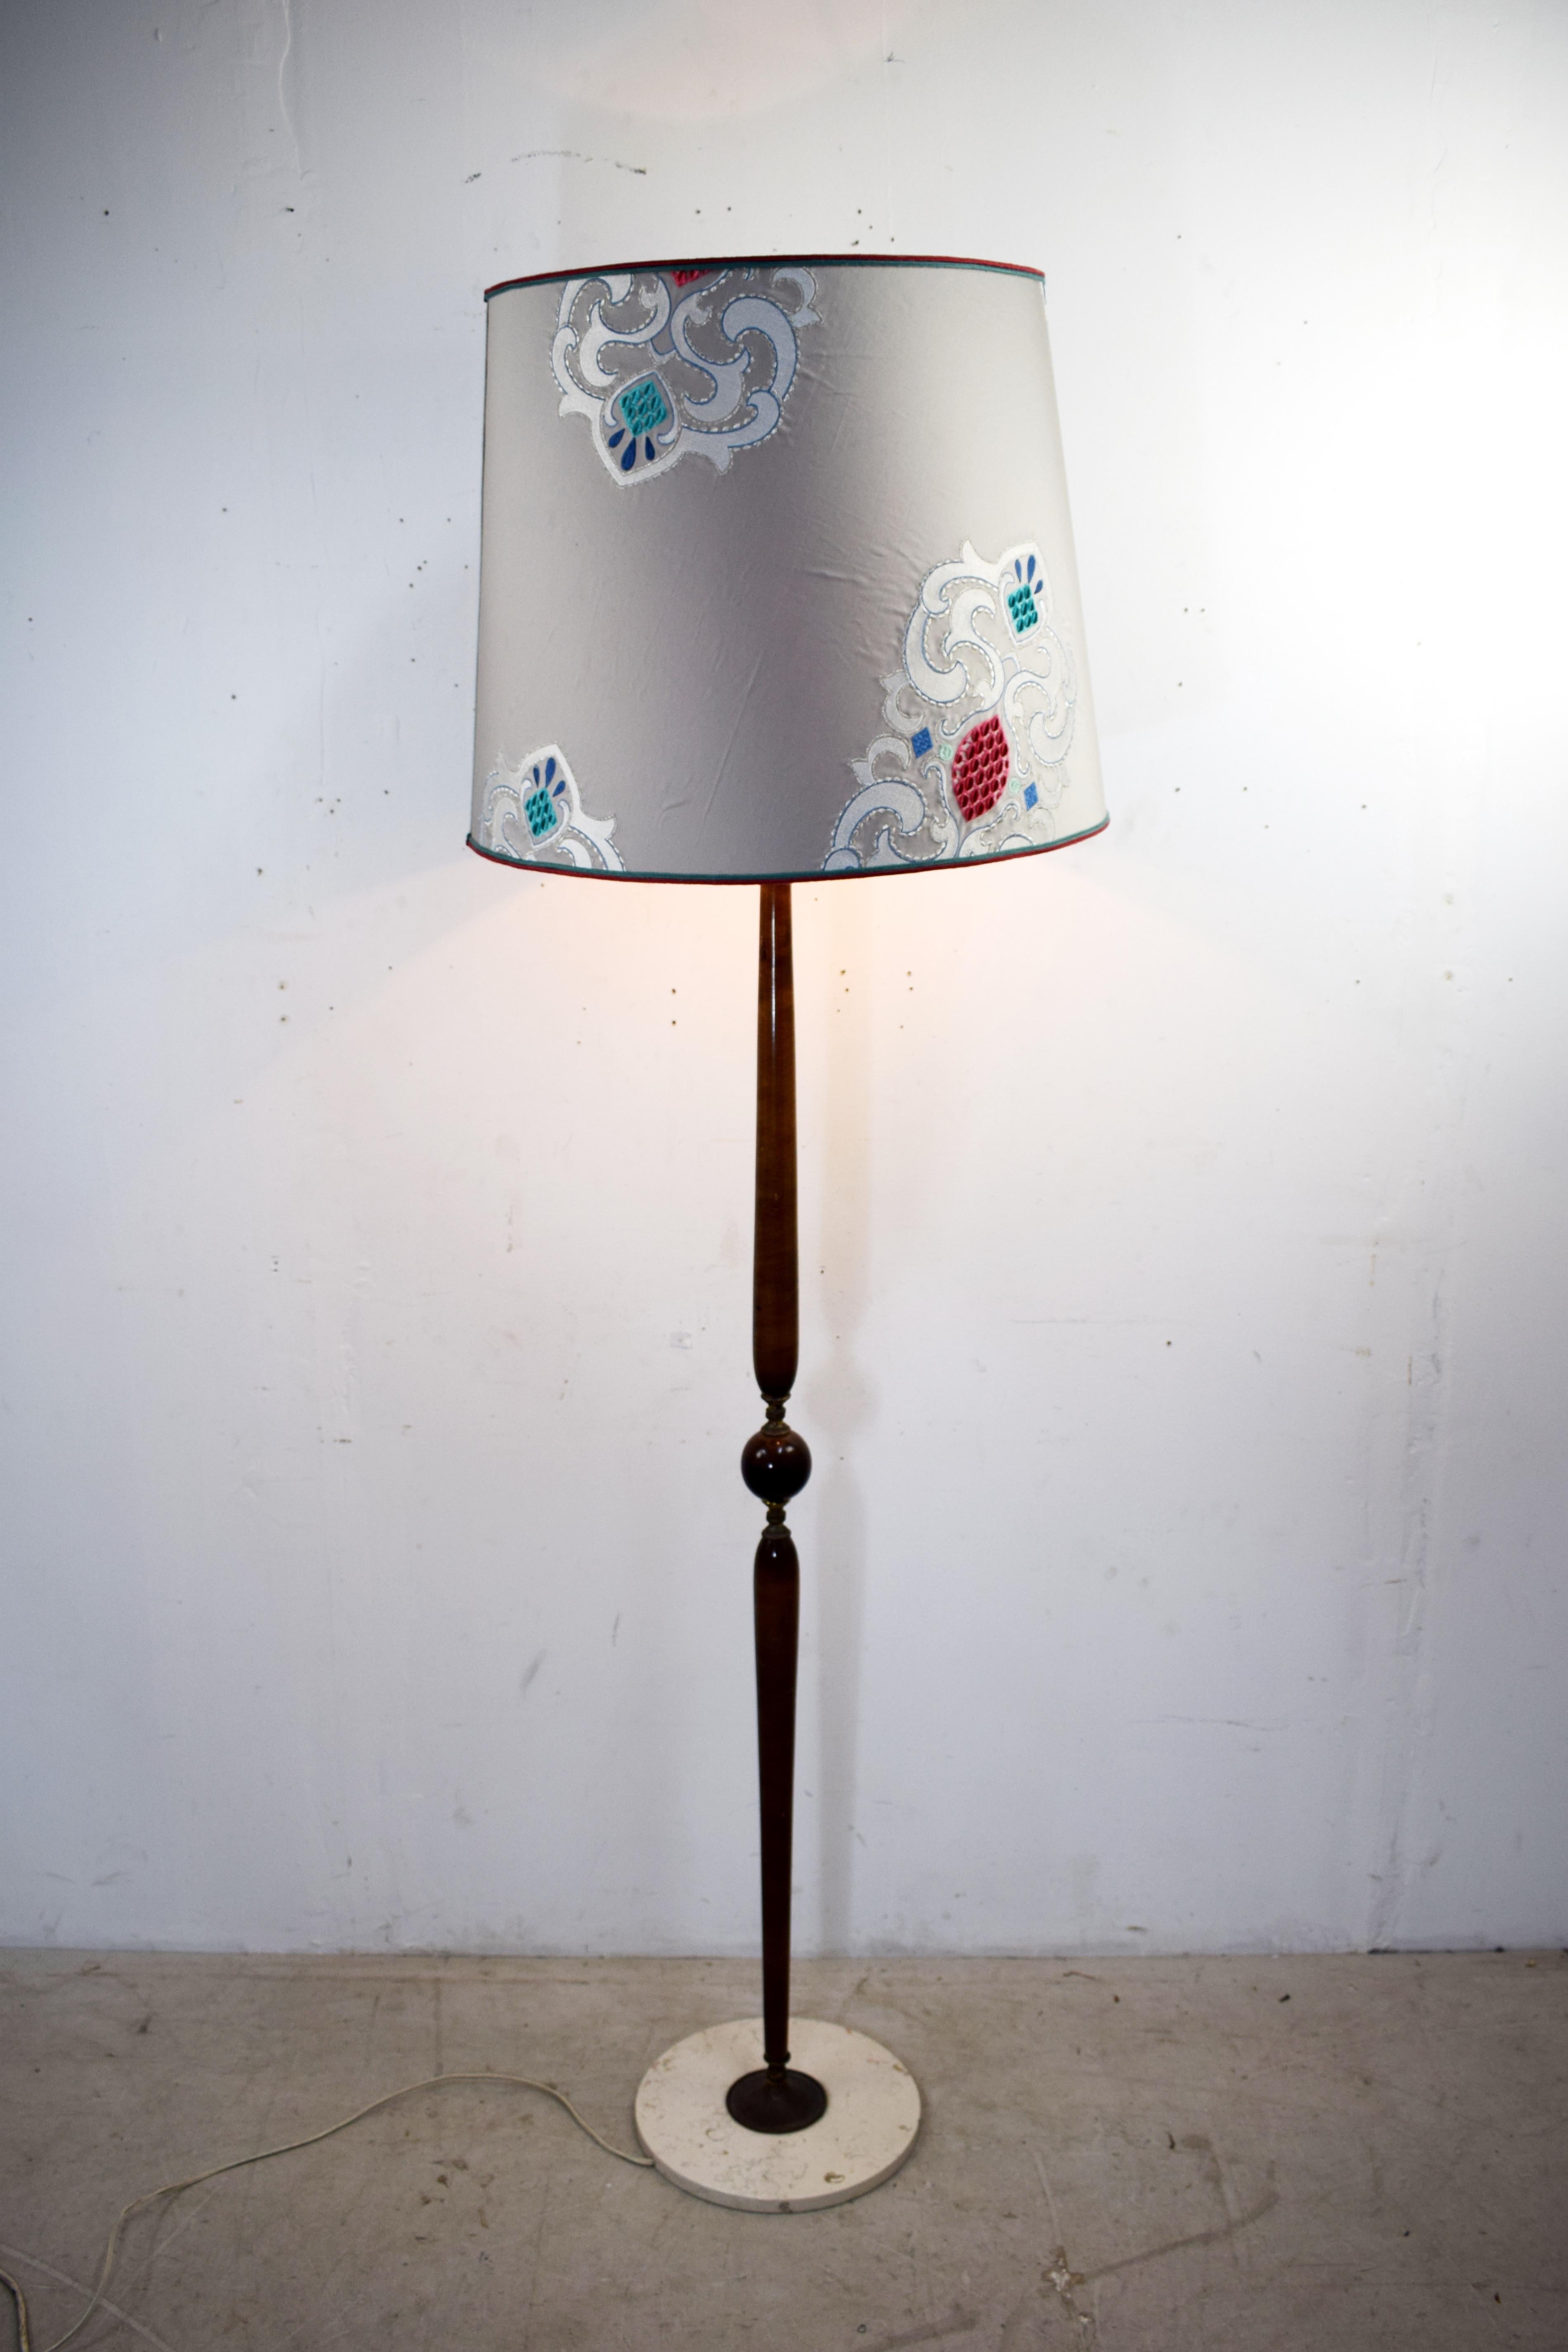 Italienische Stehlampe im Stil von Cesare Lacca, 1940er Jahre.
Abmessungen: H= 180 cm; T= 55 cm.